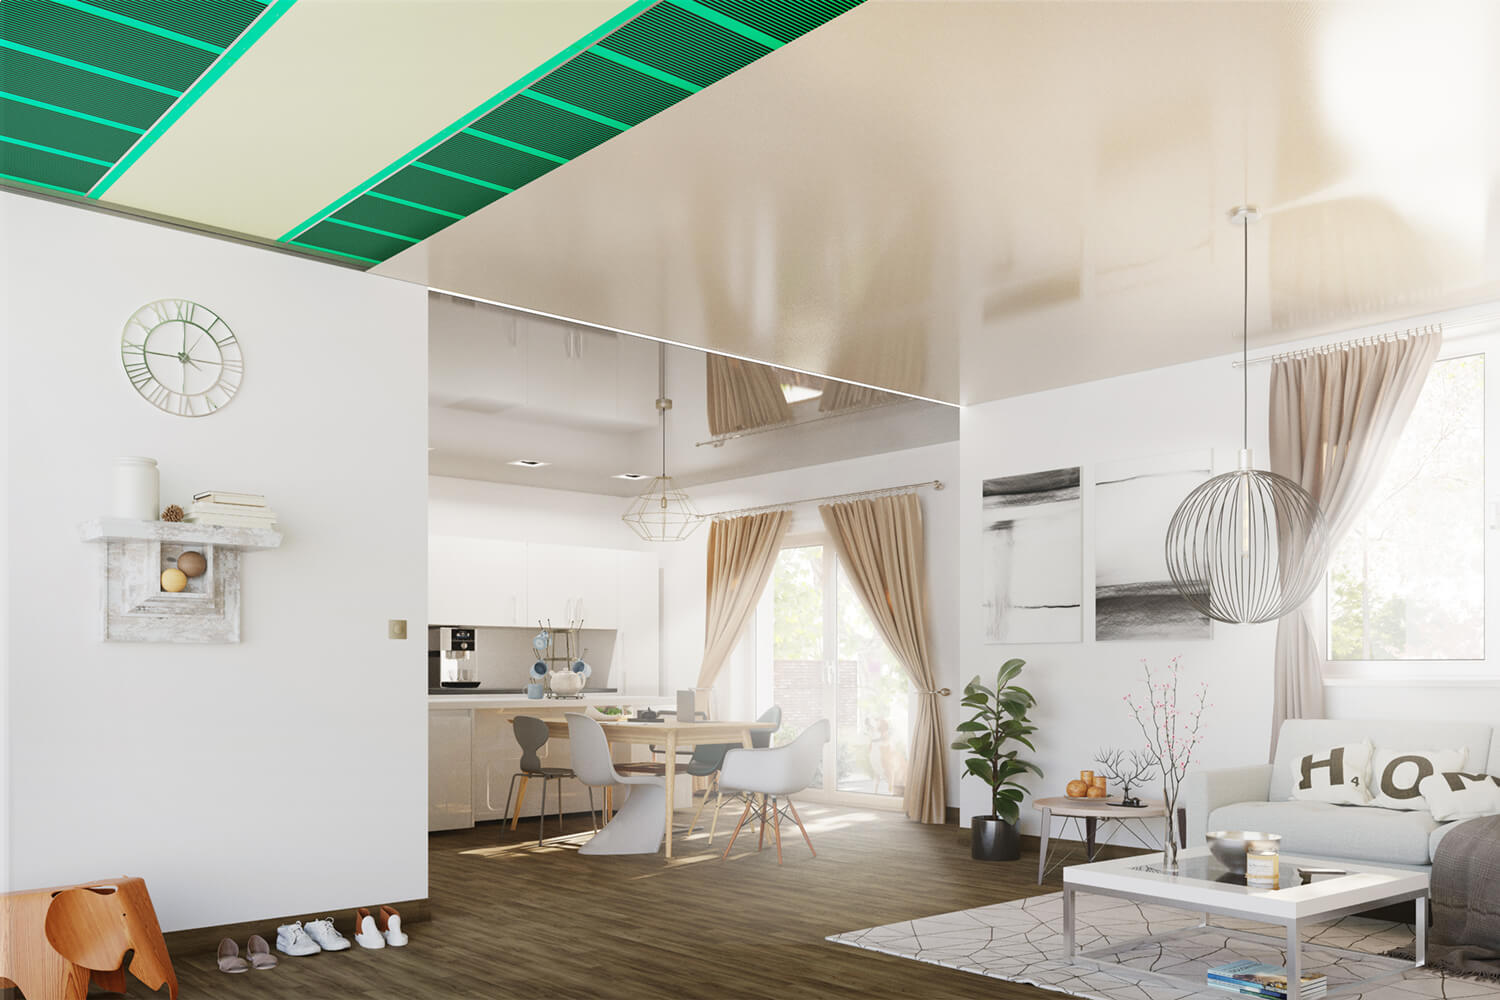 CILING Infrarot-Deckenheizung unter einer Spanndecke in hellgrau schnell, sauber und effizient montiert, Ansicht eines Wohn- und Esszimmers